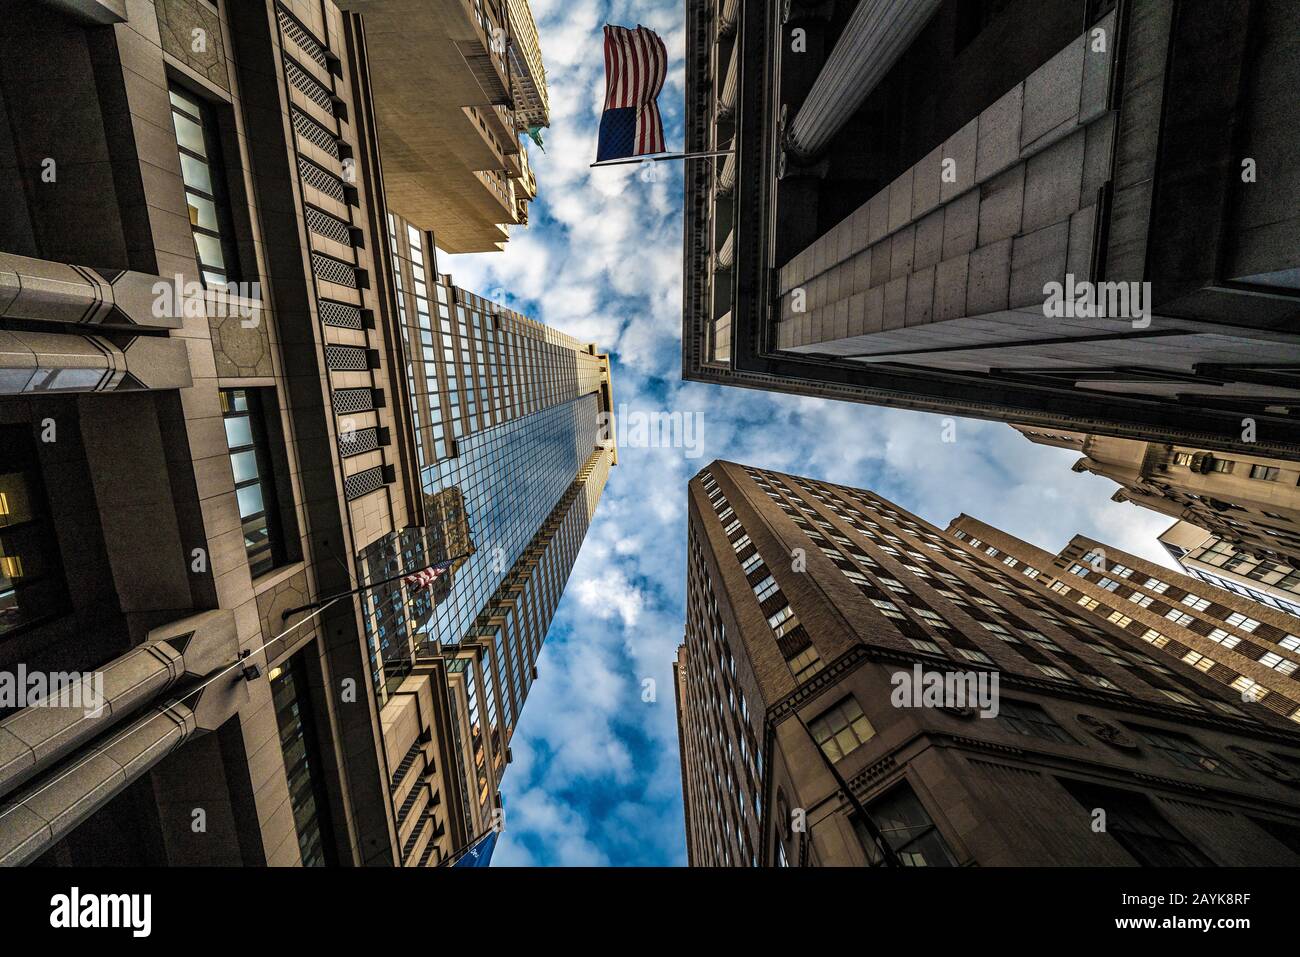 New YORK, USA - 08. OKTOBER: Stadtgebäude im Finanzviertel außerhalb des unteren Manhattan-Bereichs in der Nähe der Wall Street am 08. Oktober 2019 in New York Stockfoto